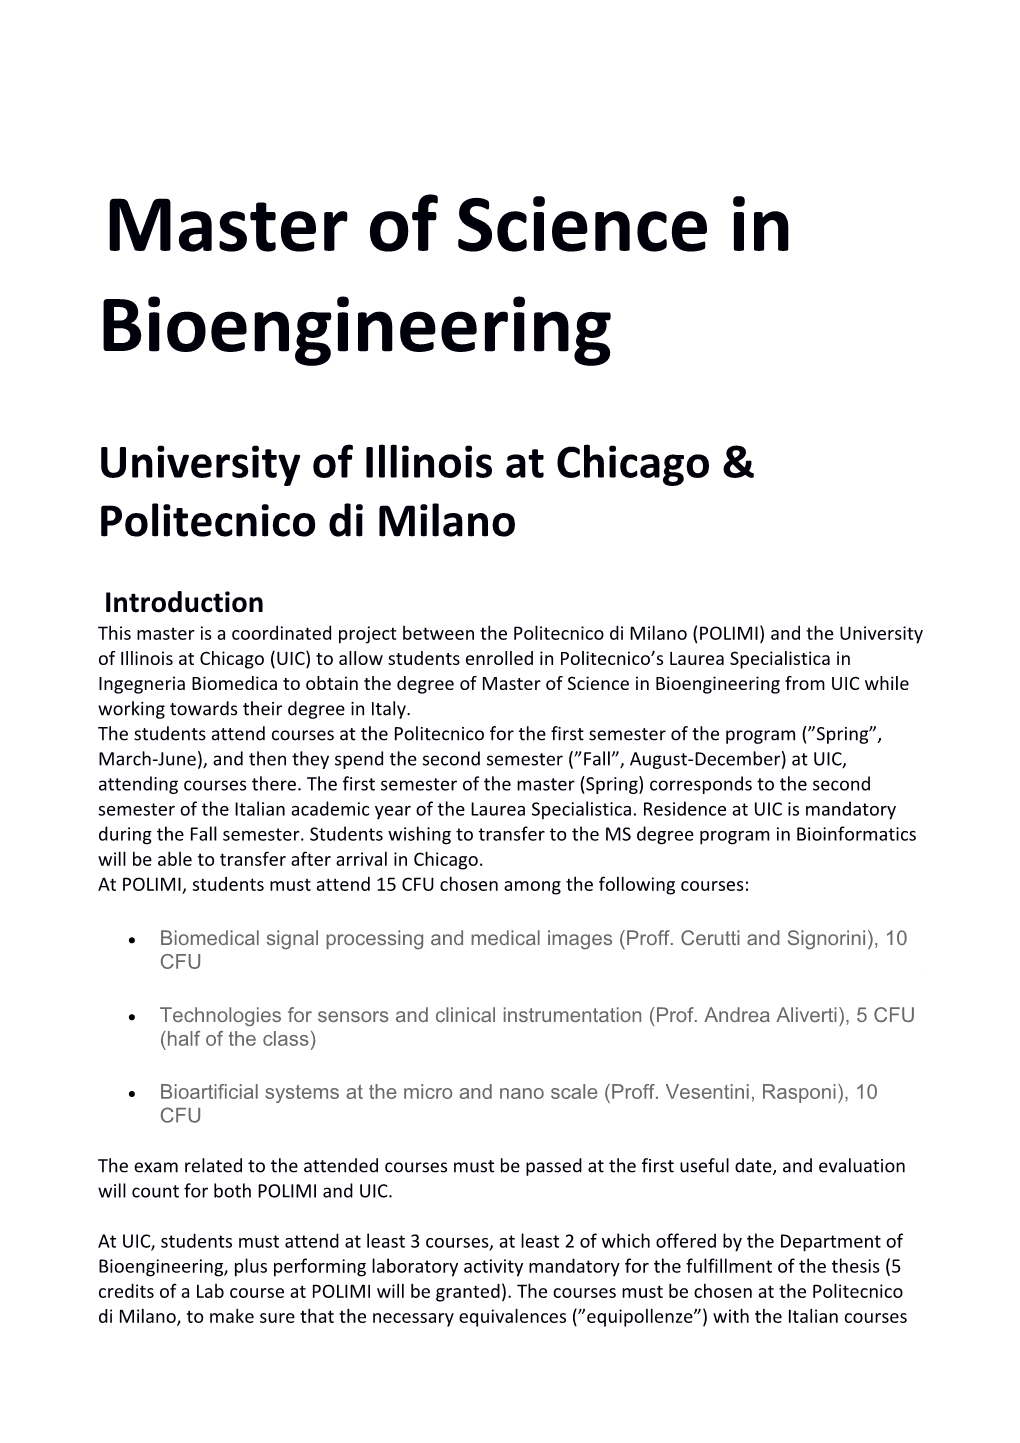 University of Illinois at Chicago & Politecnico Di Milano